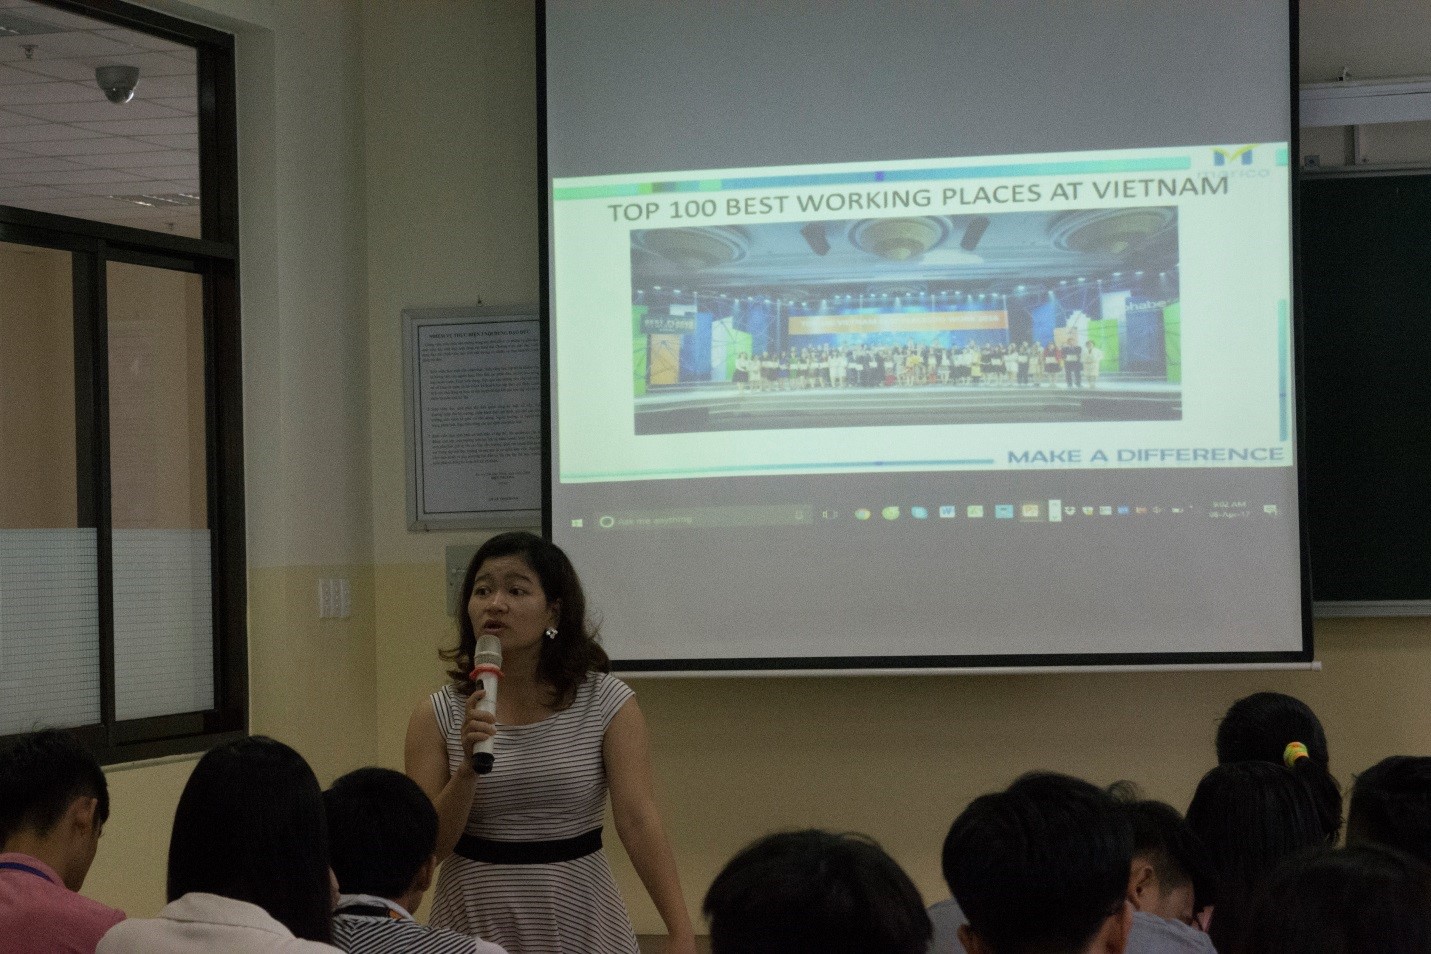 Chị Nguyễn Thị Ngọc Quỳnh đang chia sẻ về môi trường làm việc tốt tại Việt Nam